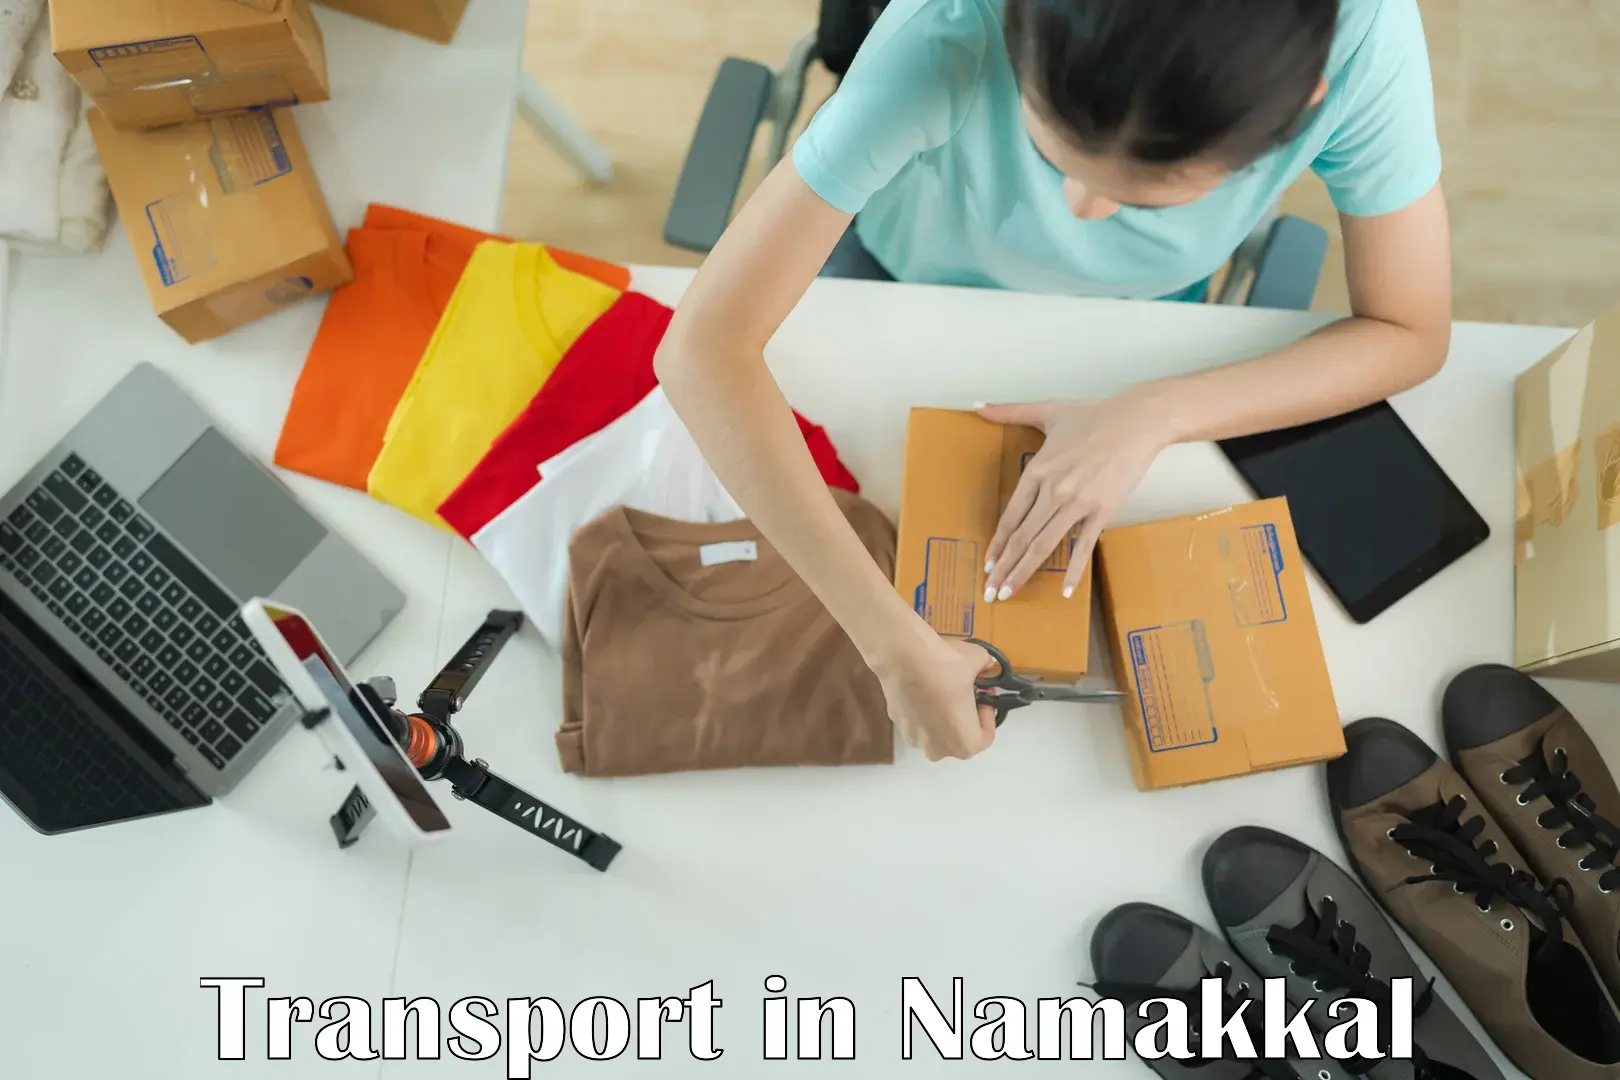 Nearest transport service in Namakkal